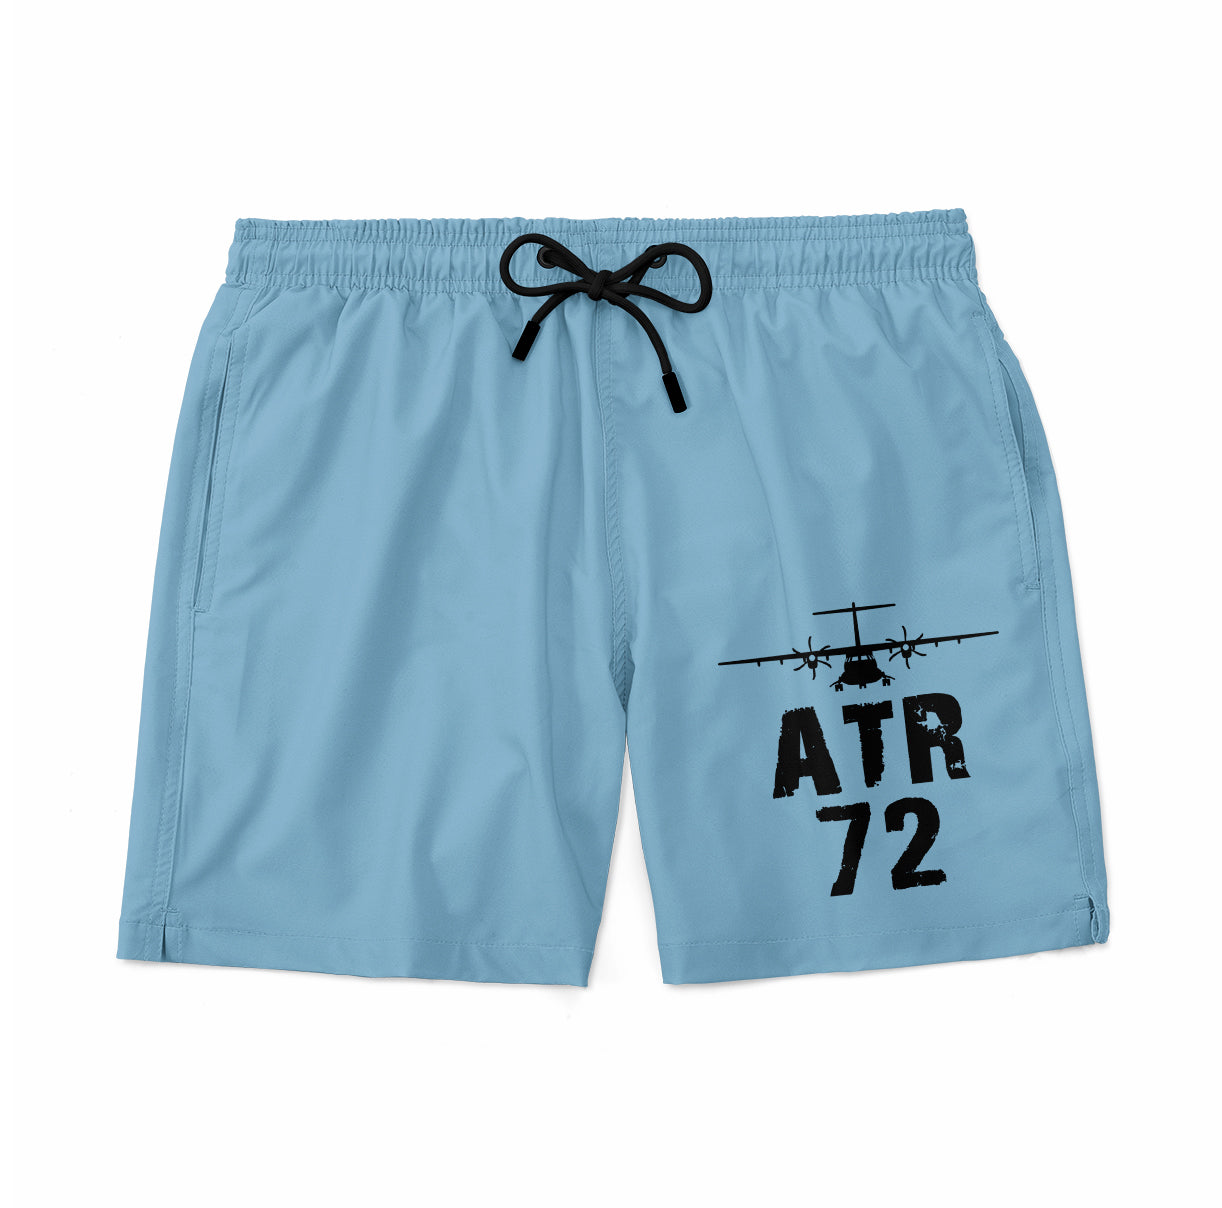 ATR-72 & Plane Designed Swim Trunks & Shorts